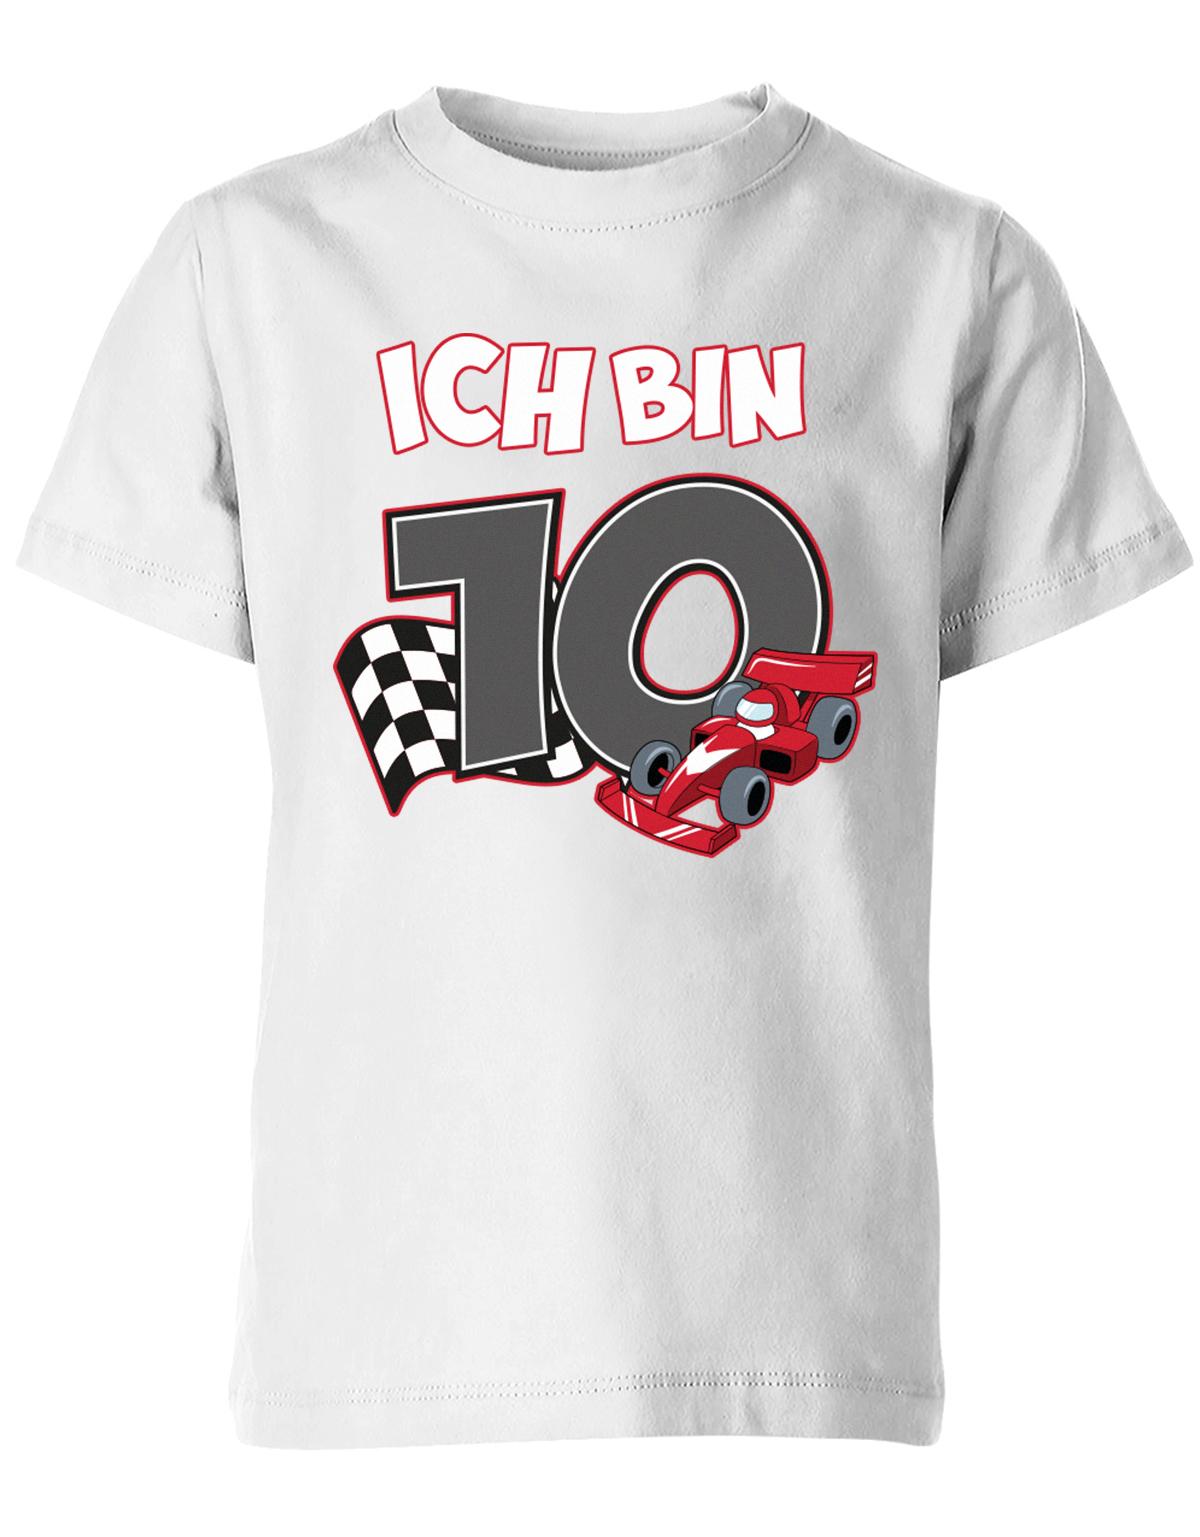 ich-bin-10-autorennen-rennwagen-geburtstag-rennfahrer-kinder-shirt-weiss